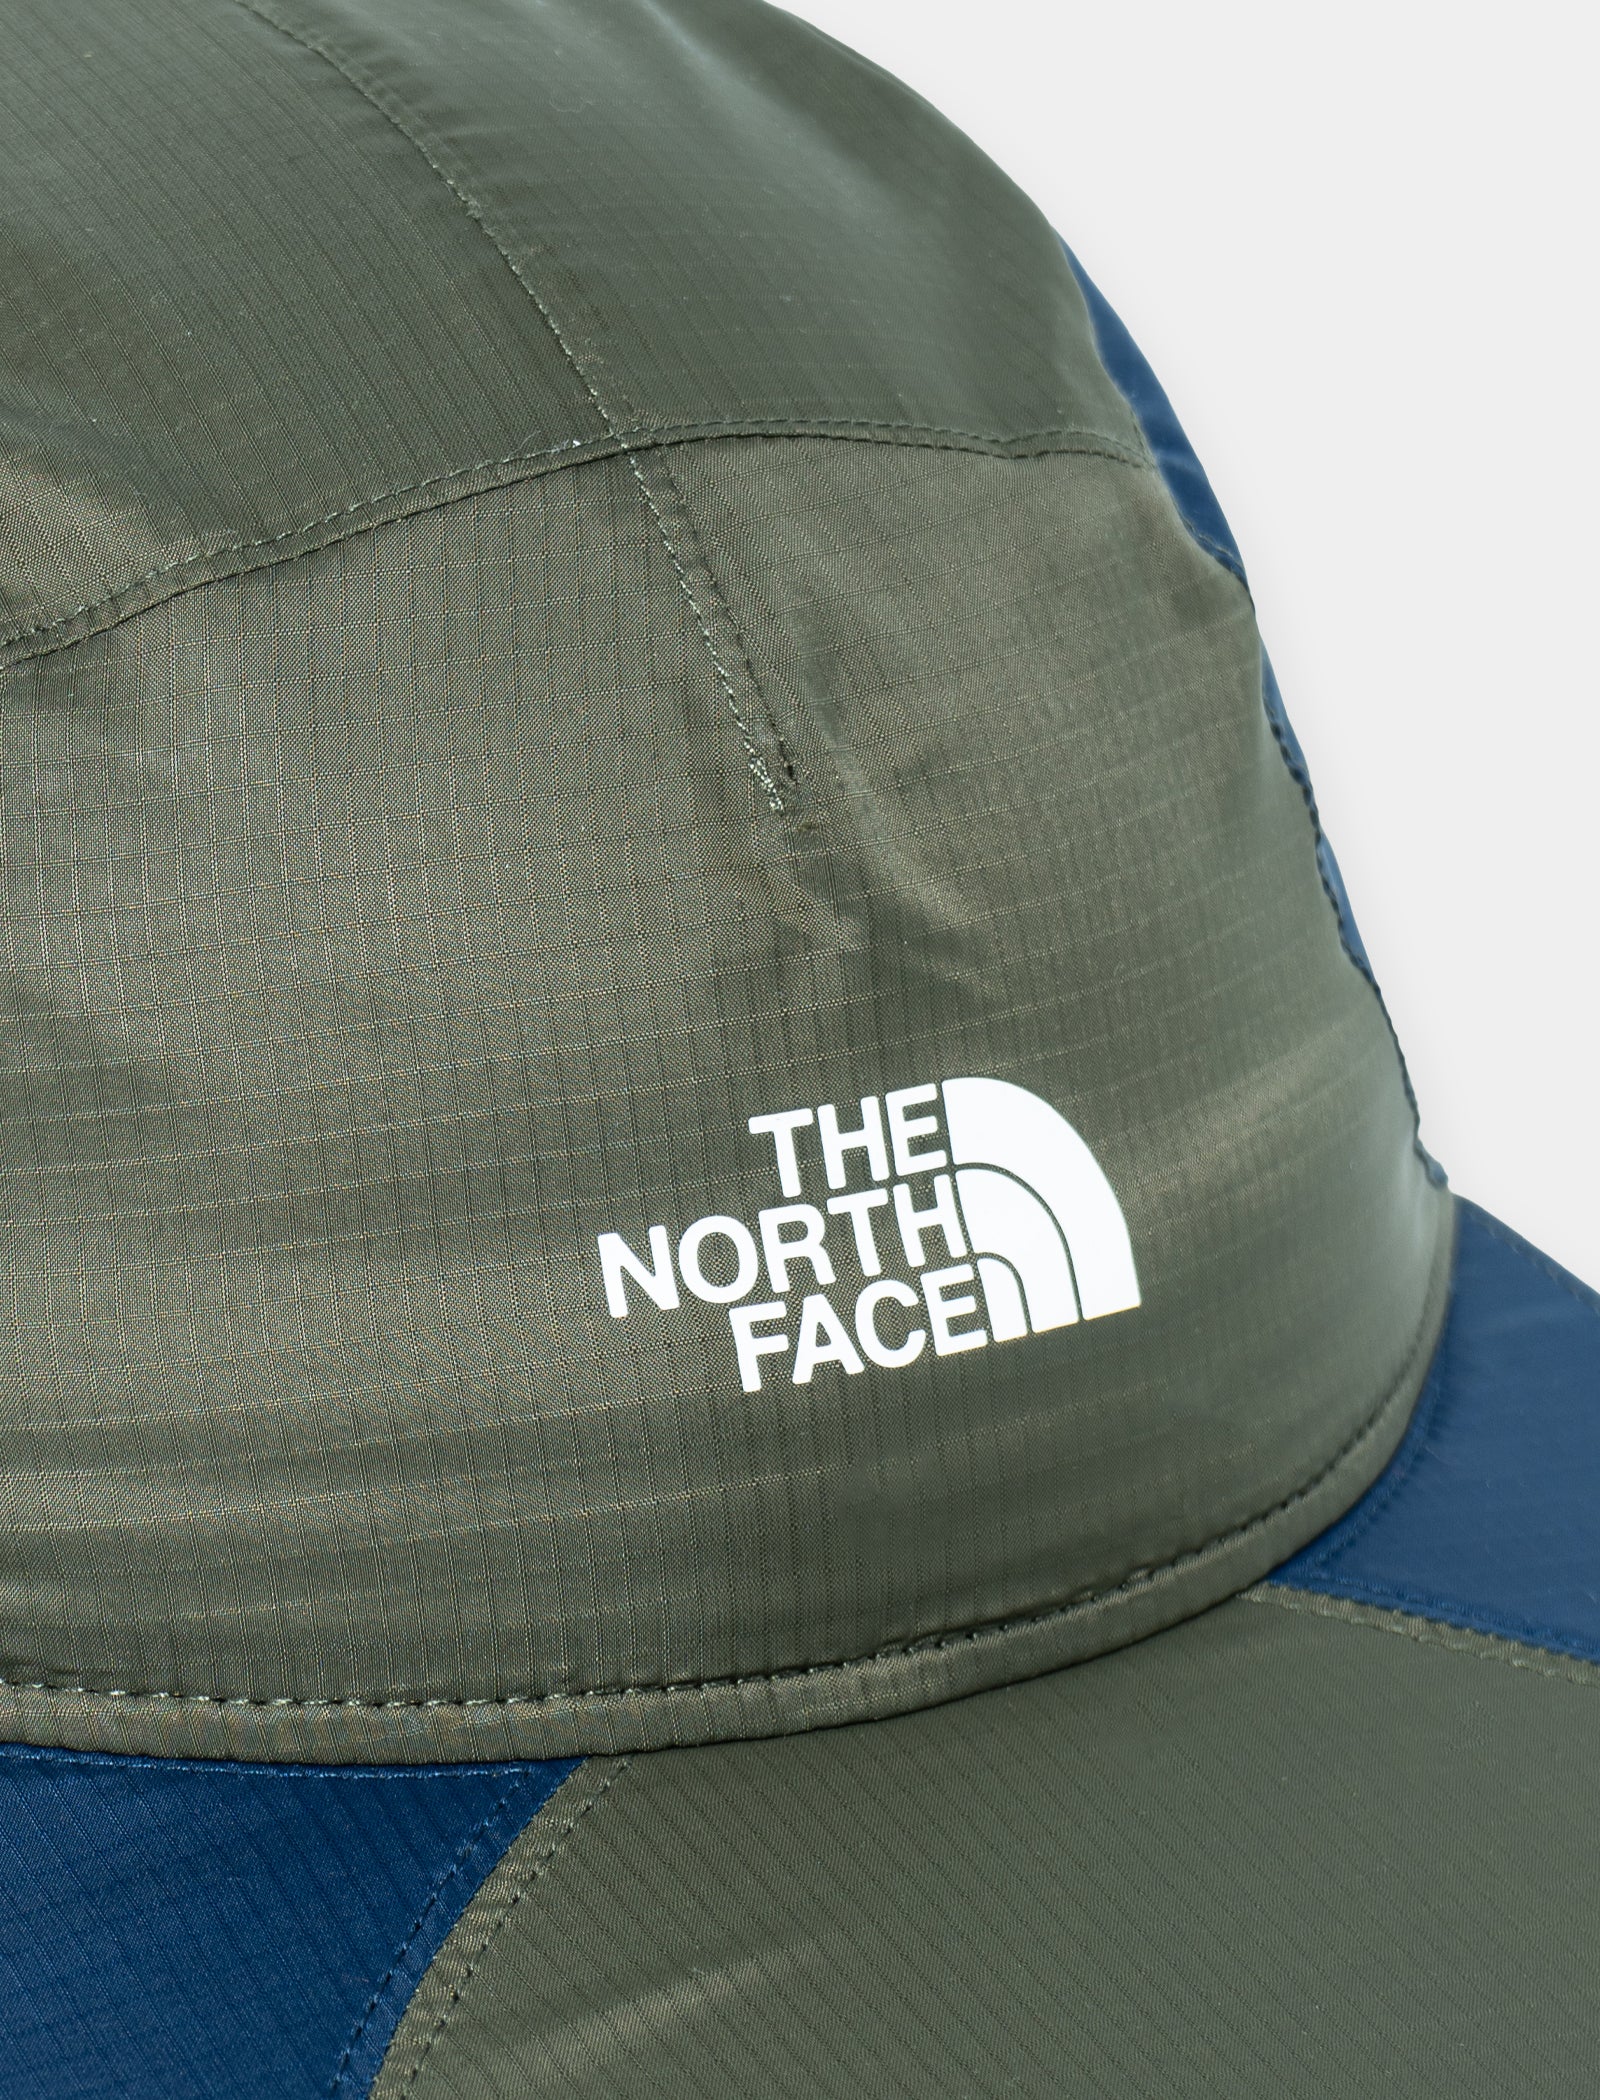 THE NORTH FACE 92 RETRO CAP